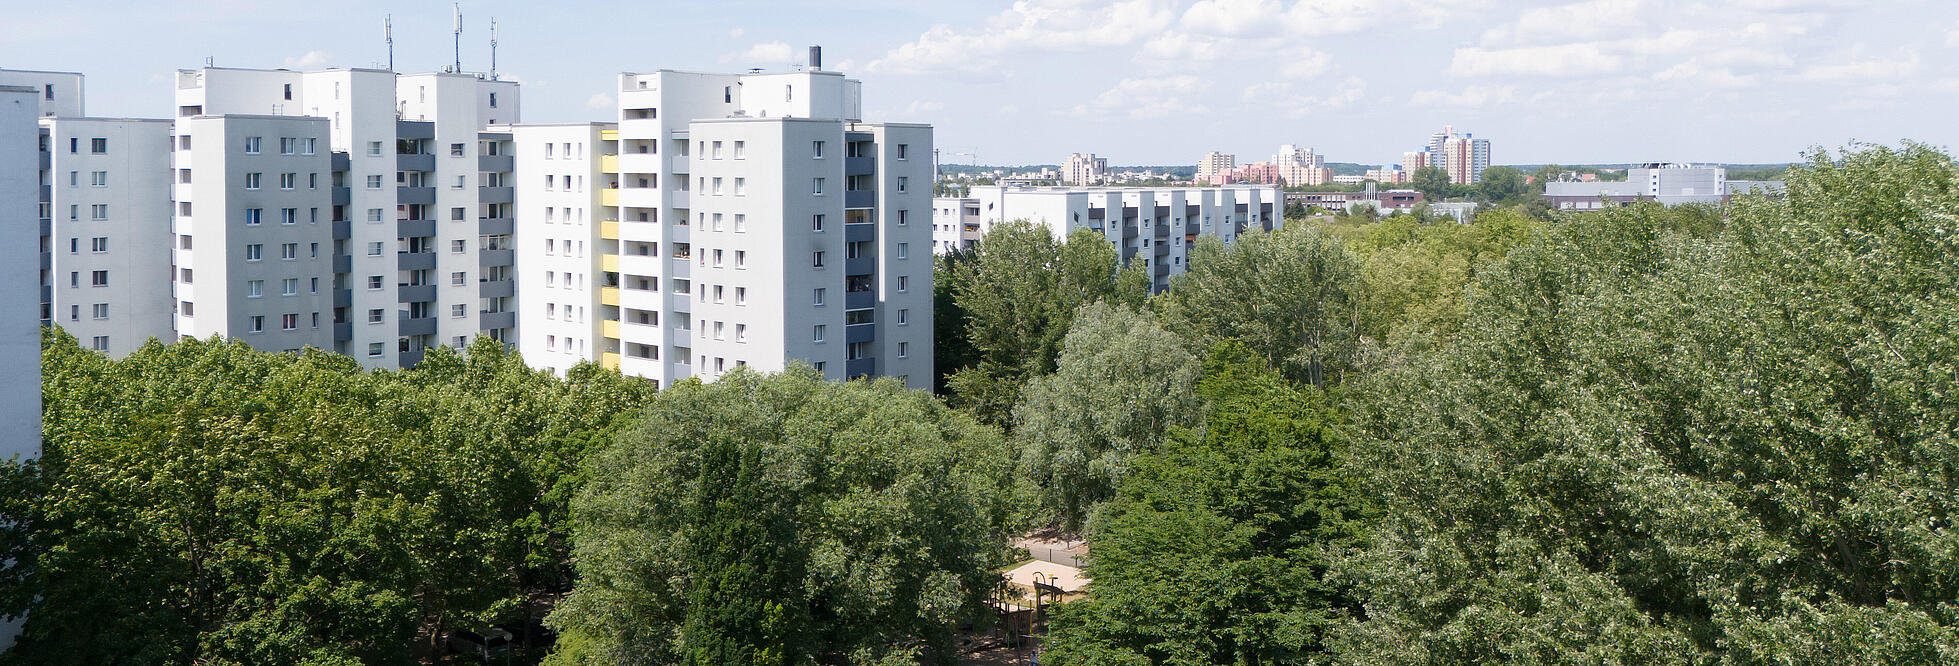 Bild zeigt Luftaufnahme der Wohnhausgruppe 909 - Wilhelmsruher Damm, Eichhorster Weg